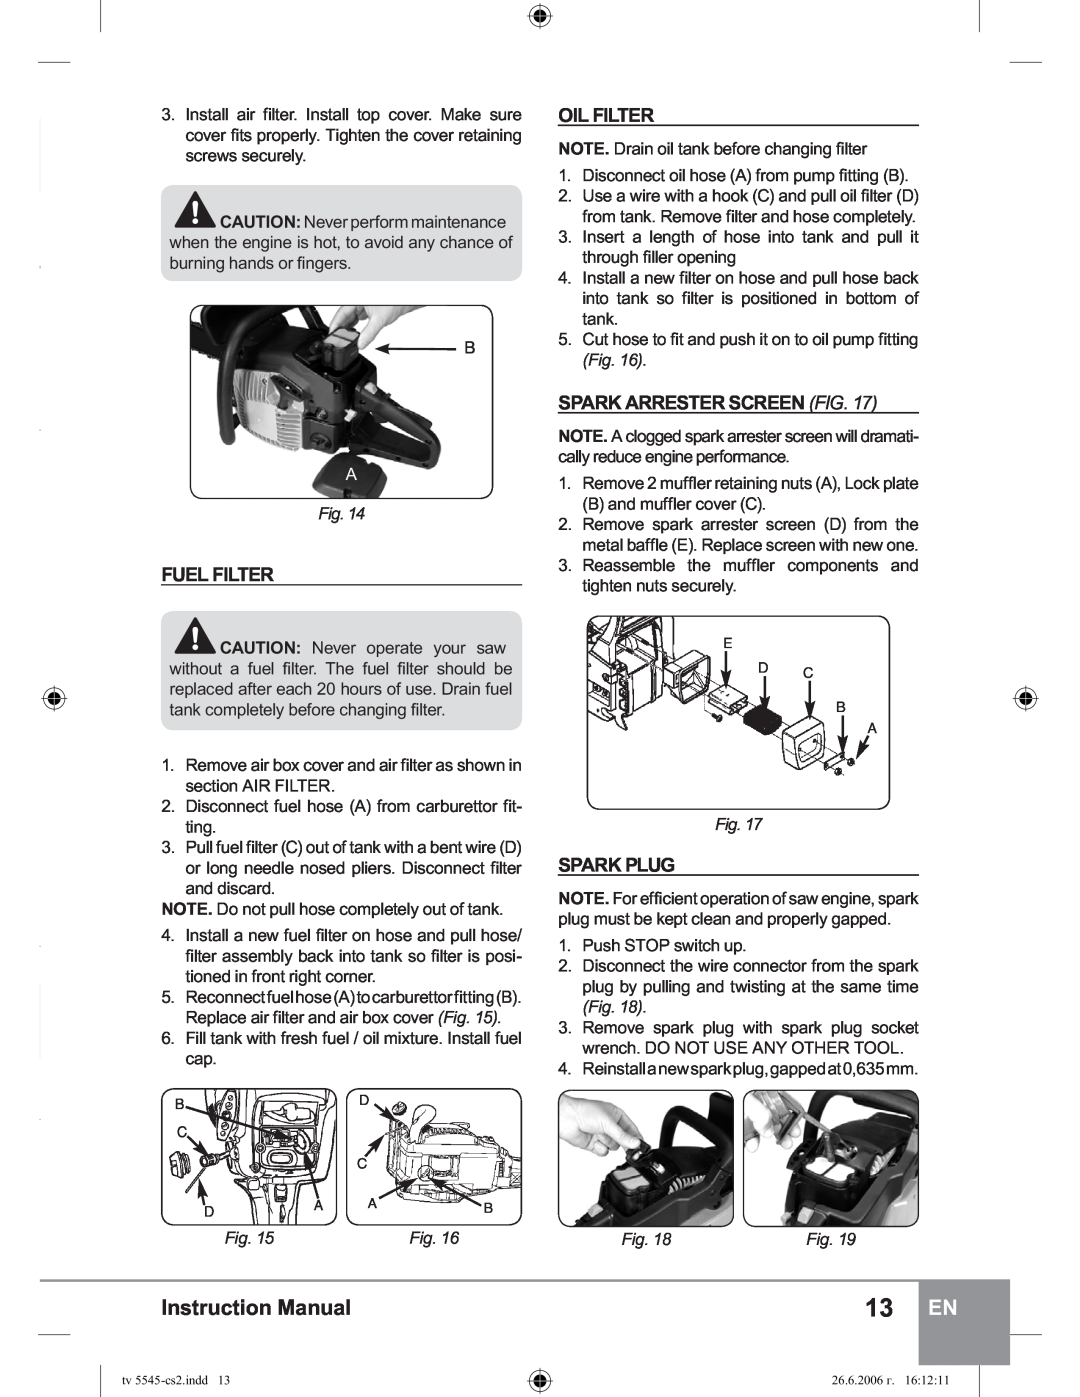 Sparky Group TV 5545 manual Fuel Filter, Oil Filter, Spark Arrester Screen Fig, Spark Plug, Instruction Manual 